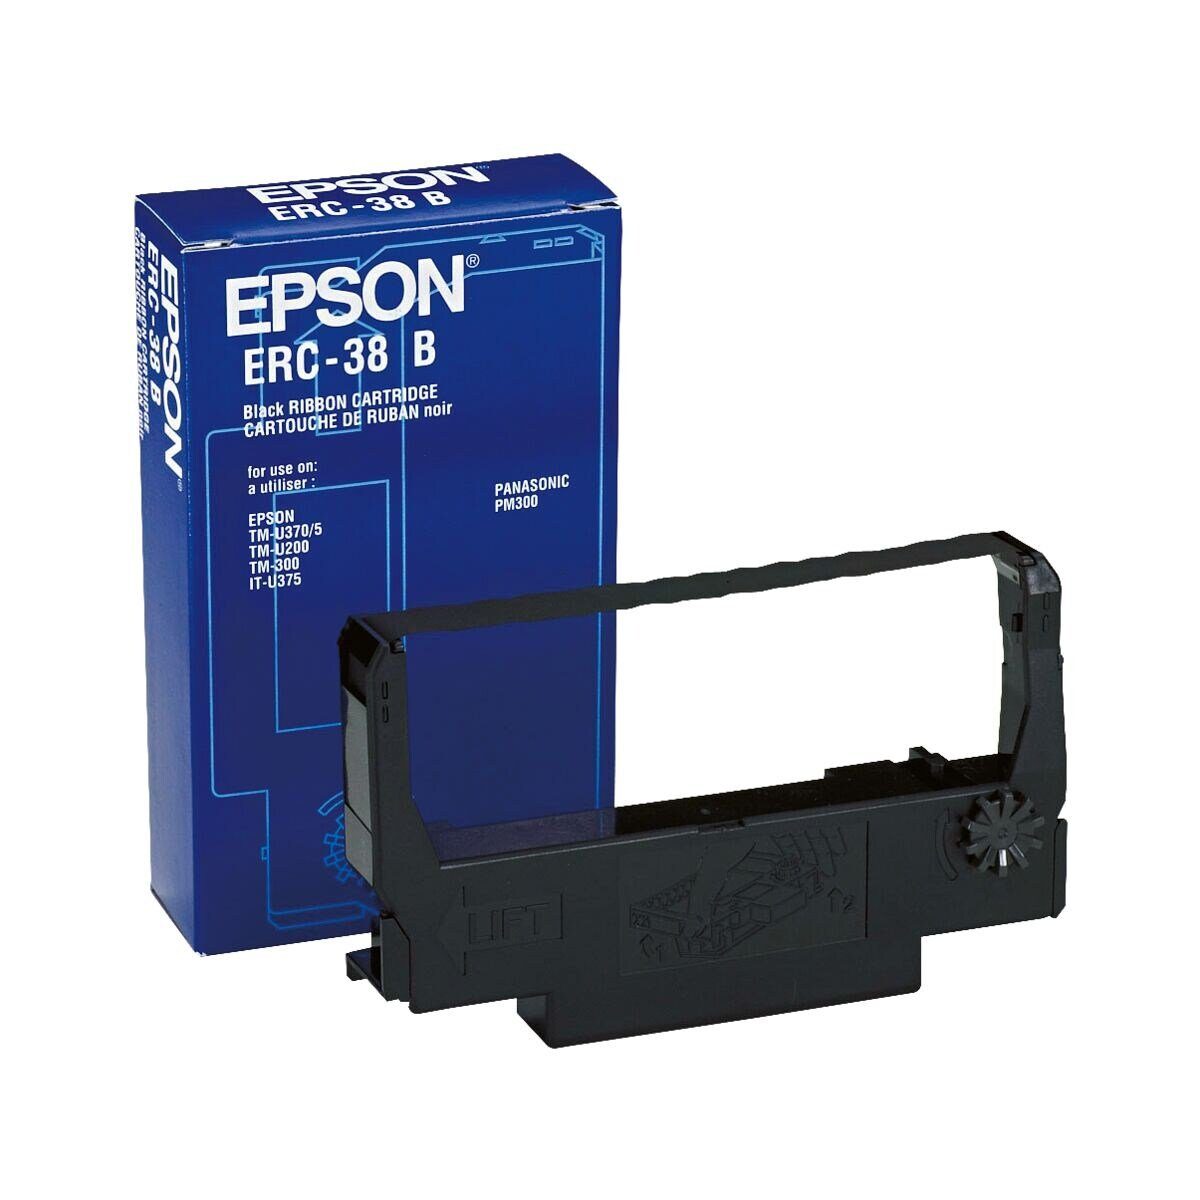 Epson für ERC-38B, Druckerband Kassensysteme, schwarz